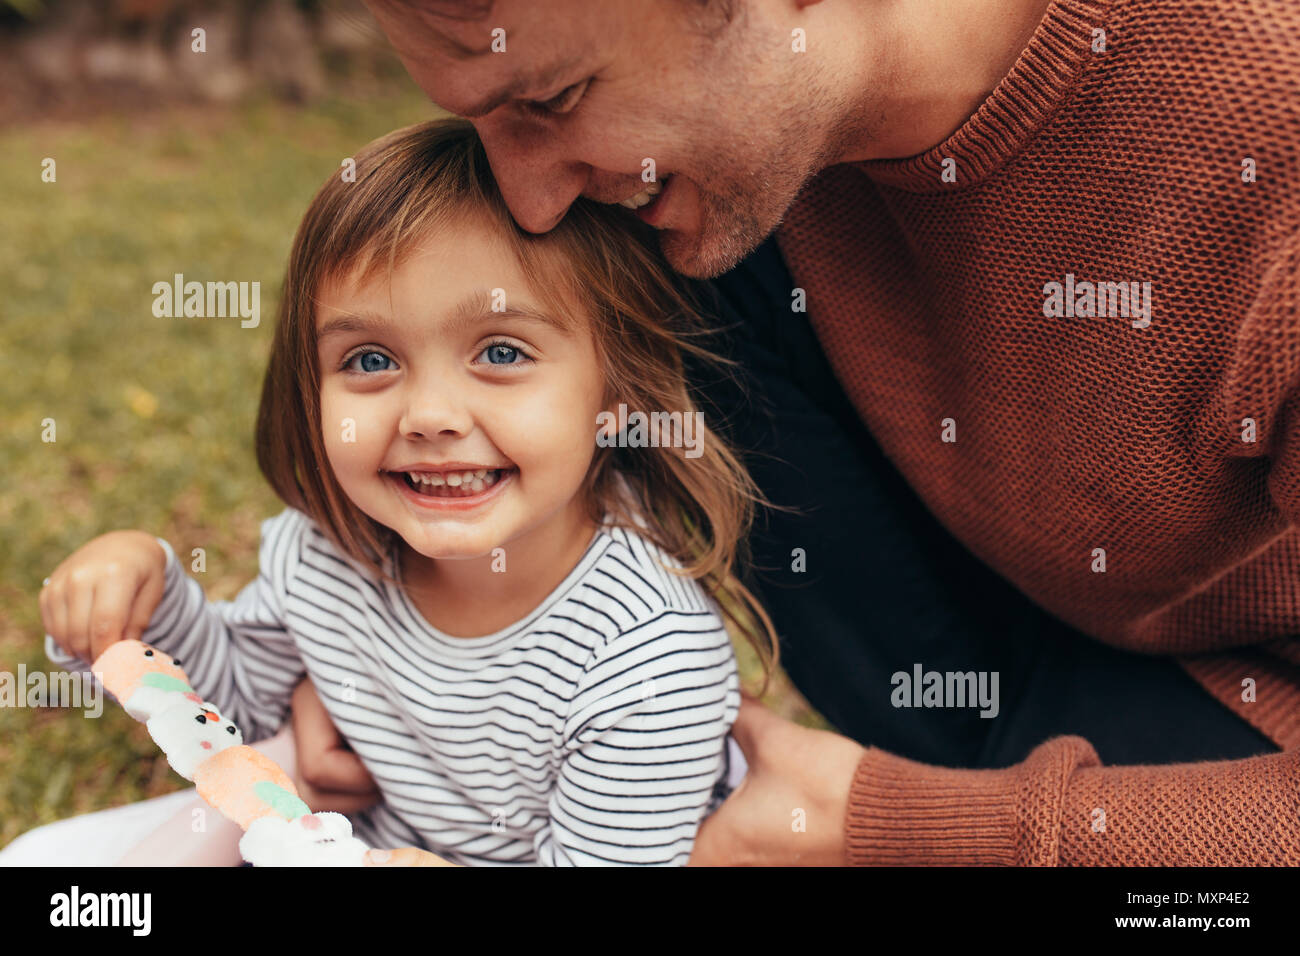 Sorridente ragazza seduta con suo padre all'aperto tenendo un zucchero candito stick. Padre e figlia di trascorrere del tempo insieme a mangiare zucchero candito. Foto Stock